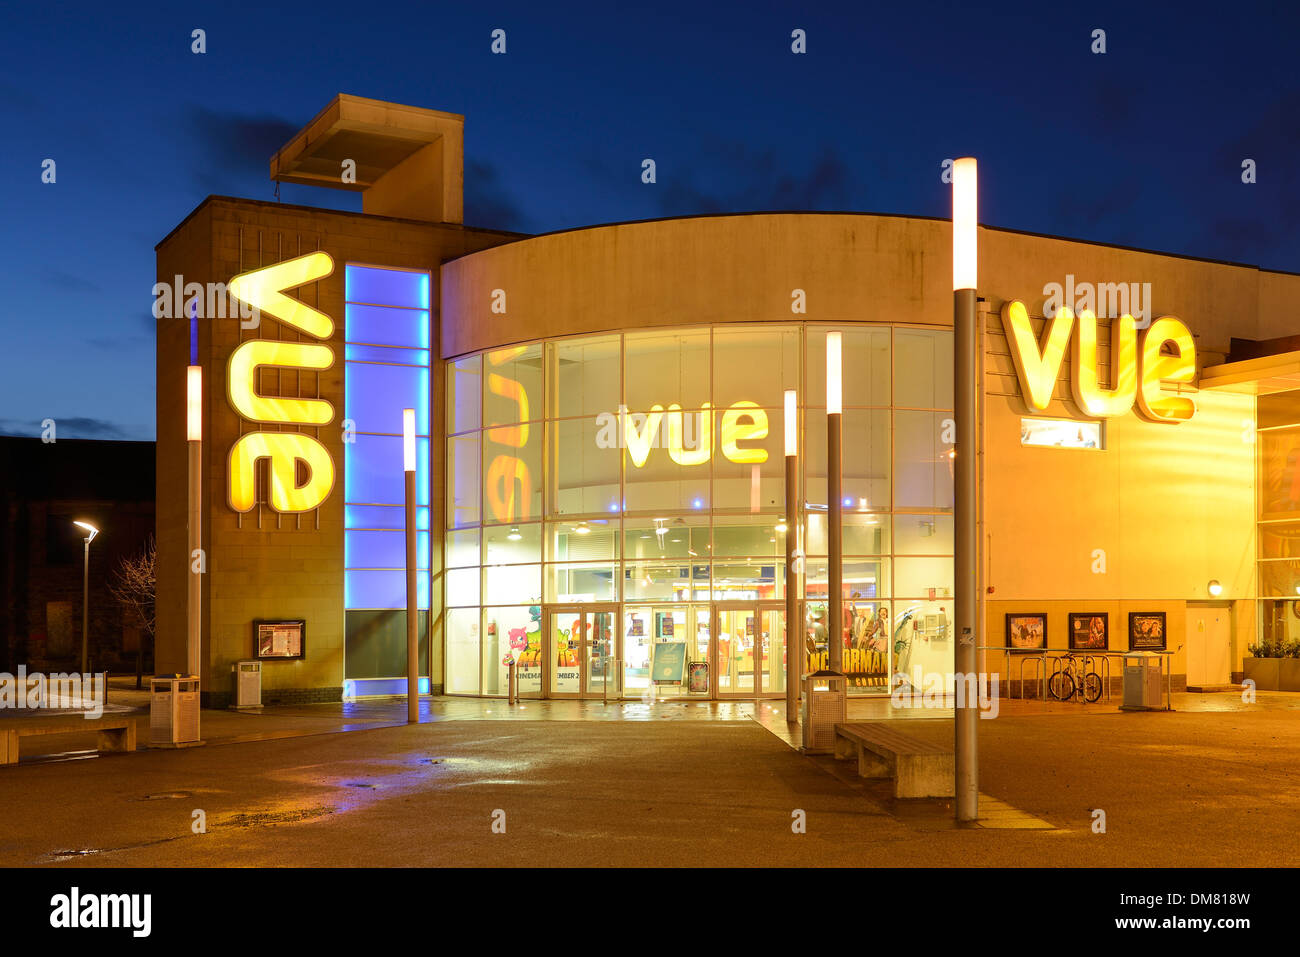 Cinéma vue complexe dans le centre-ville de Stirling Ecosse UK Banque D'Images